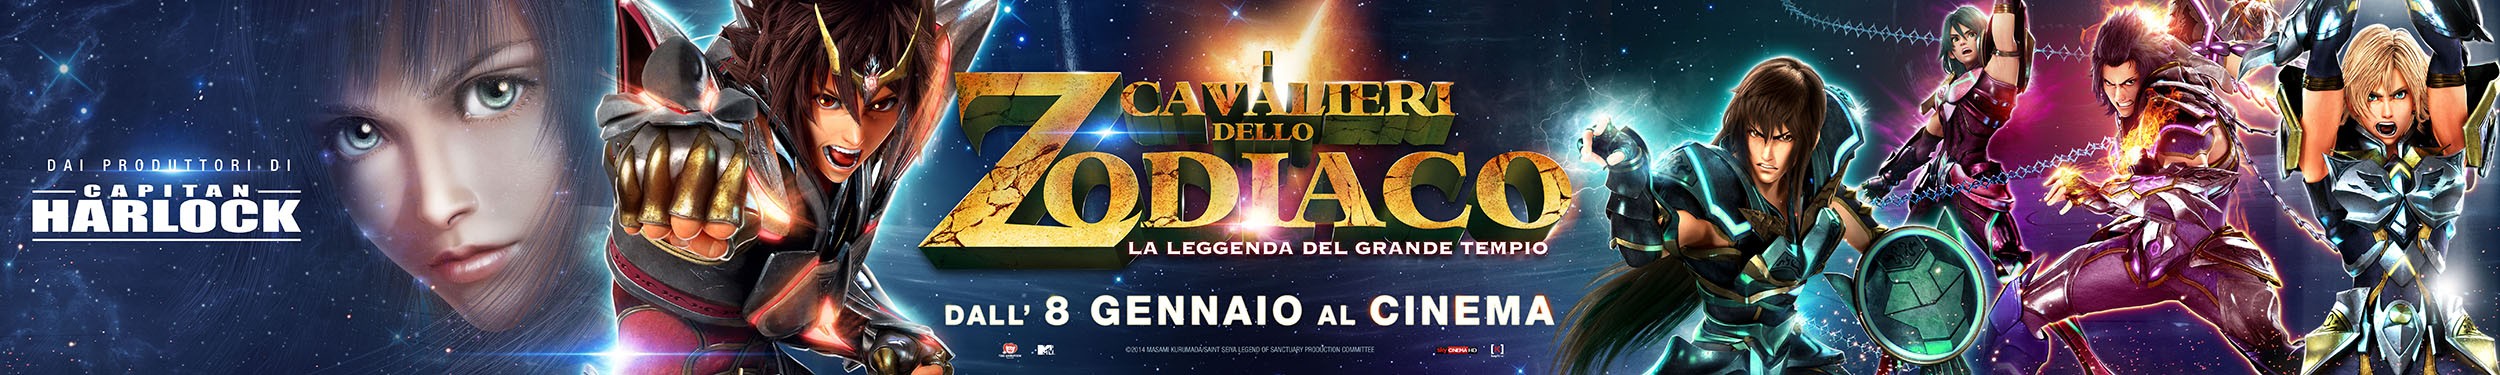 Mega Sized Movie Poster Image for I Cavalieri dello Zodiaco - La leggenda del Grande Tempio (#8 of 9)